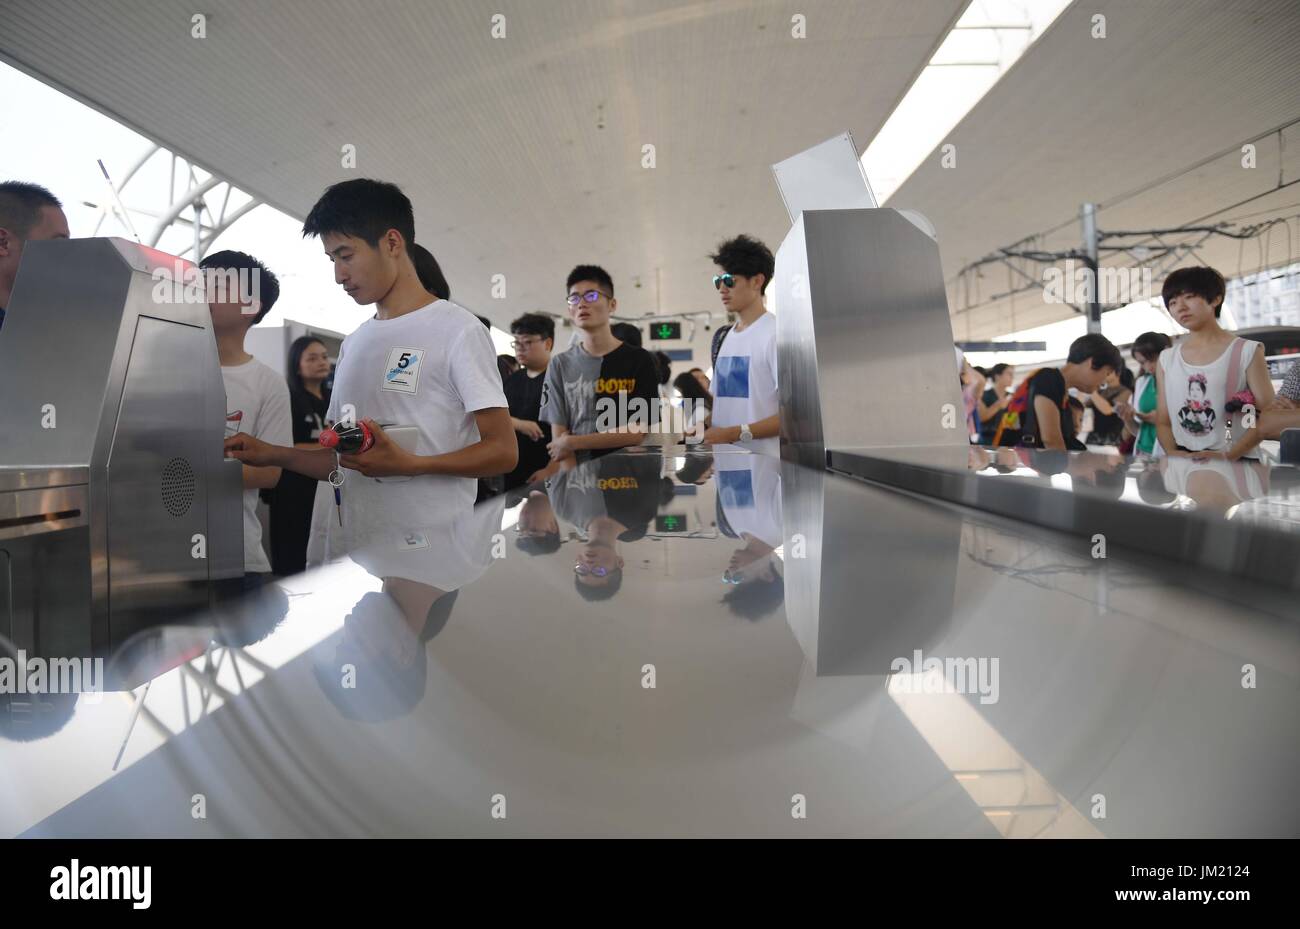 (170725) -- CHENGDU, 25 de julio de 2017 (Xinhua) -- Los pasajeros pasar la entrada de la estación Xipu en Chengdu, capital del suroeste de la provincia de Sichuan (China), 25 de julio de 2017. La estación, proporcionando un sistema de intercambio de plataforma cruzada entre la Línea 2 de Metro y Ferrocarril Chengguan de Chengdu, fue puesto en uso el martes. (Xinhua/Xue Yubin) (clq) Foto de stock